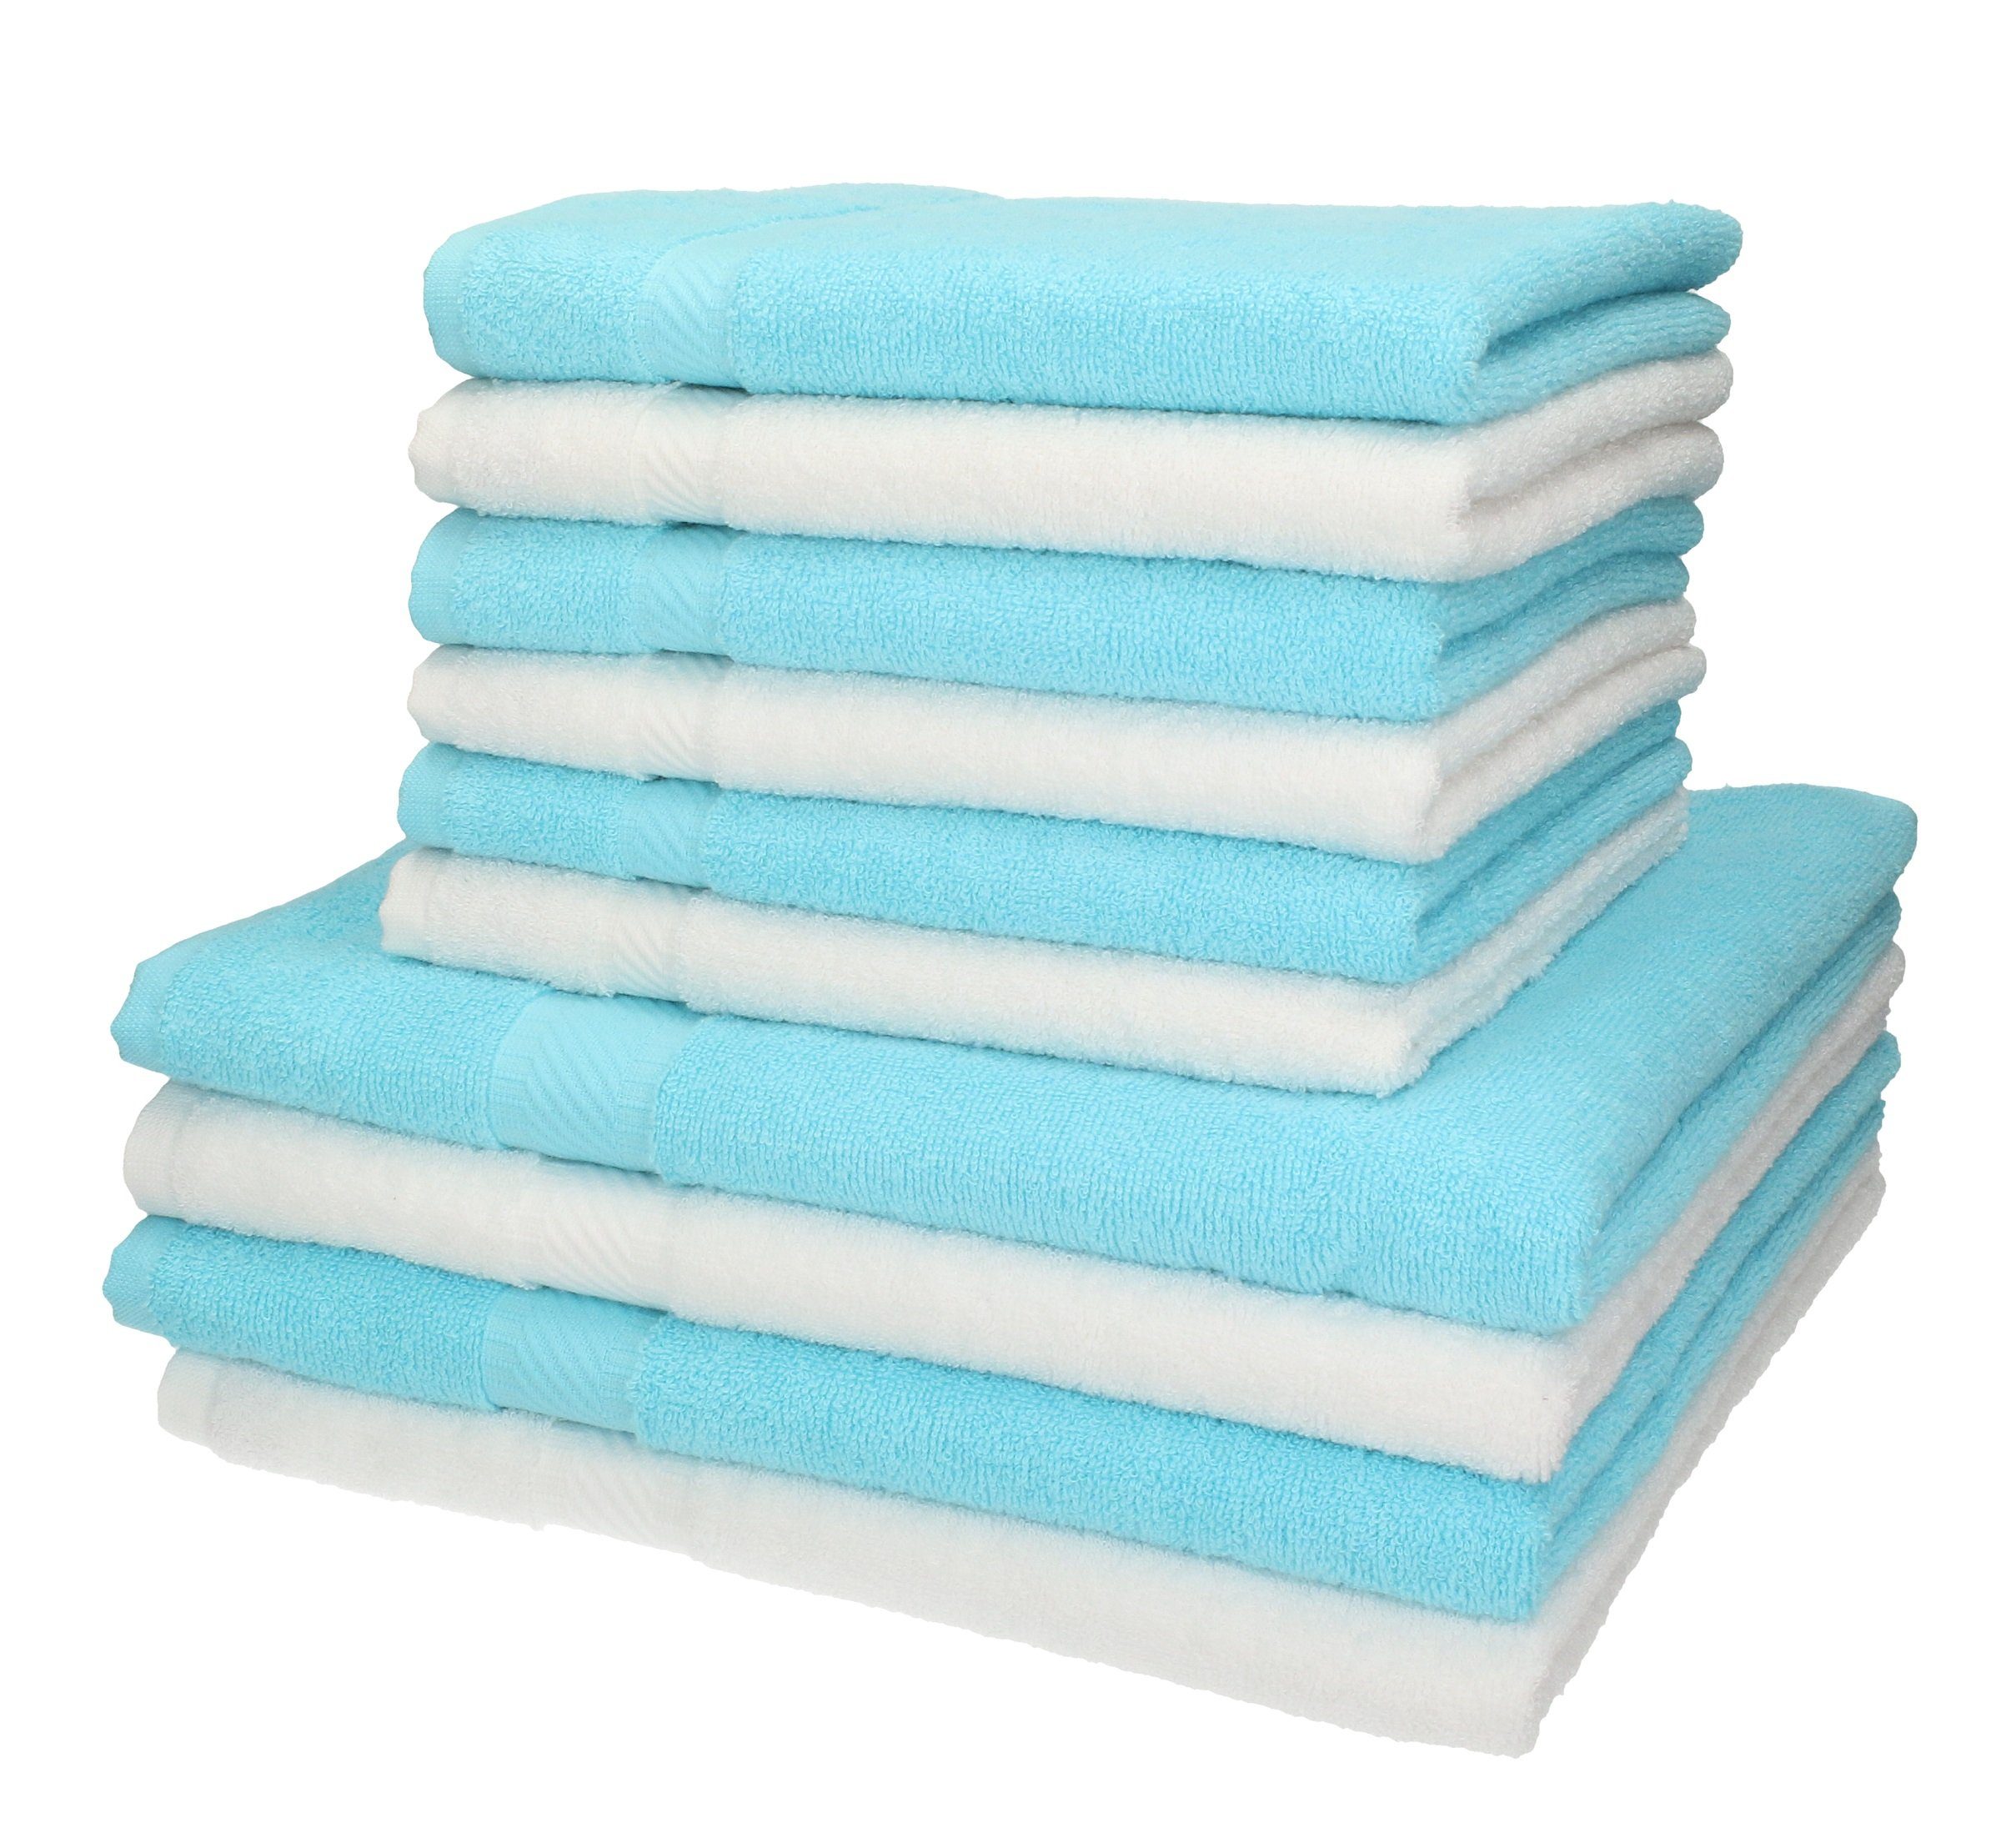 Handtuch 10-tlg. Duschtücher 100% Baumwolle türkis, Handtücher Set 6 Betz Palermo Farbe weiß 4 Set und